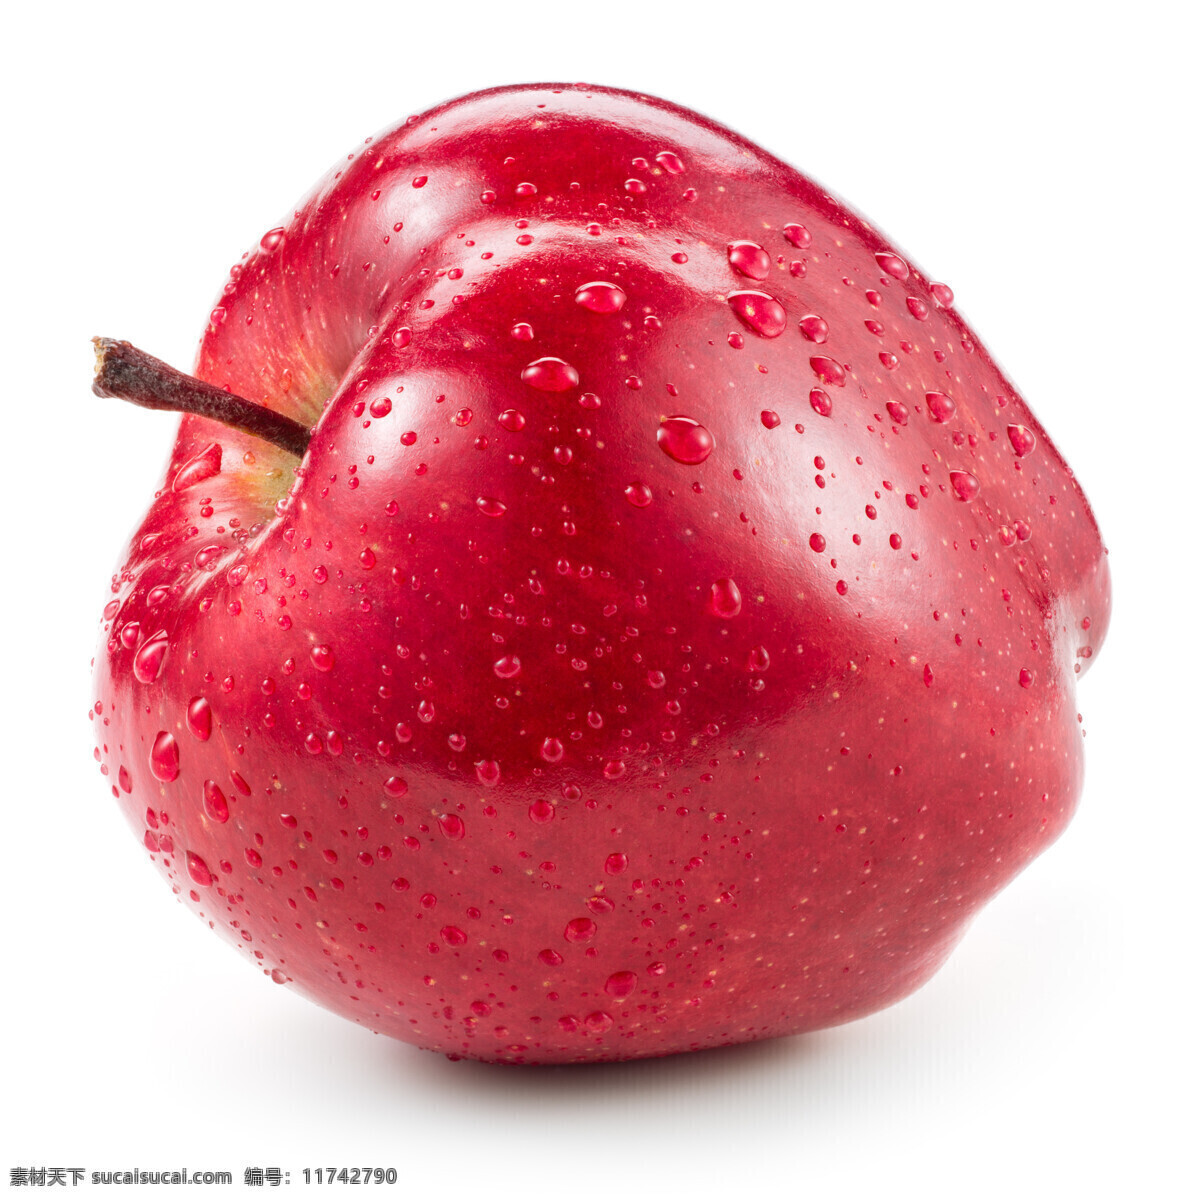 红苹果 唯美 原生态水果 水果 鲜果 新鲜 苹果 生物世界